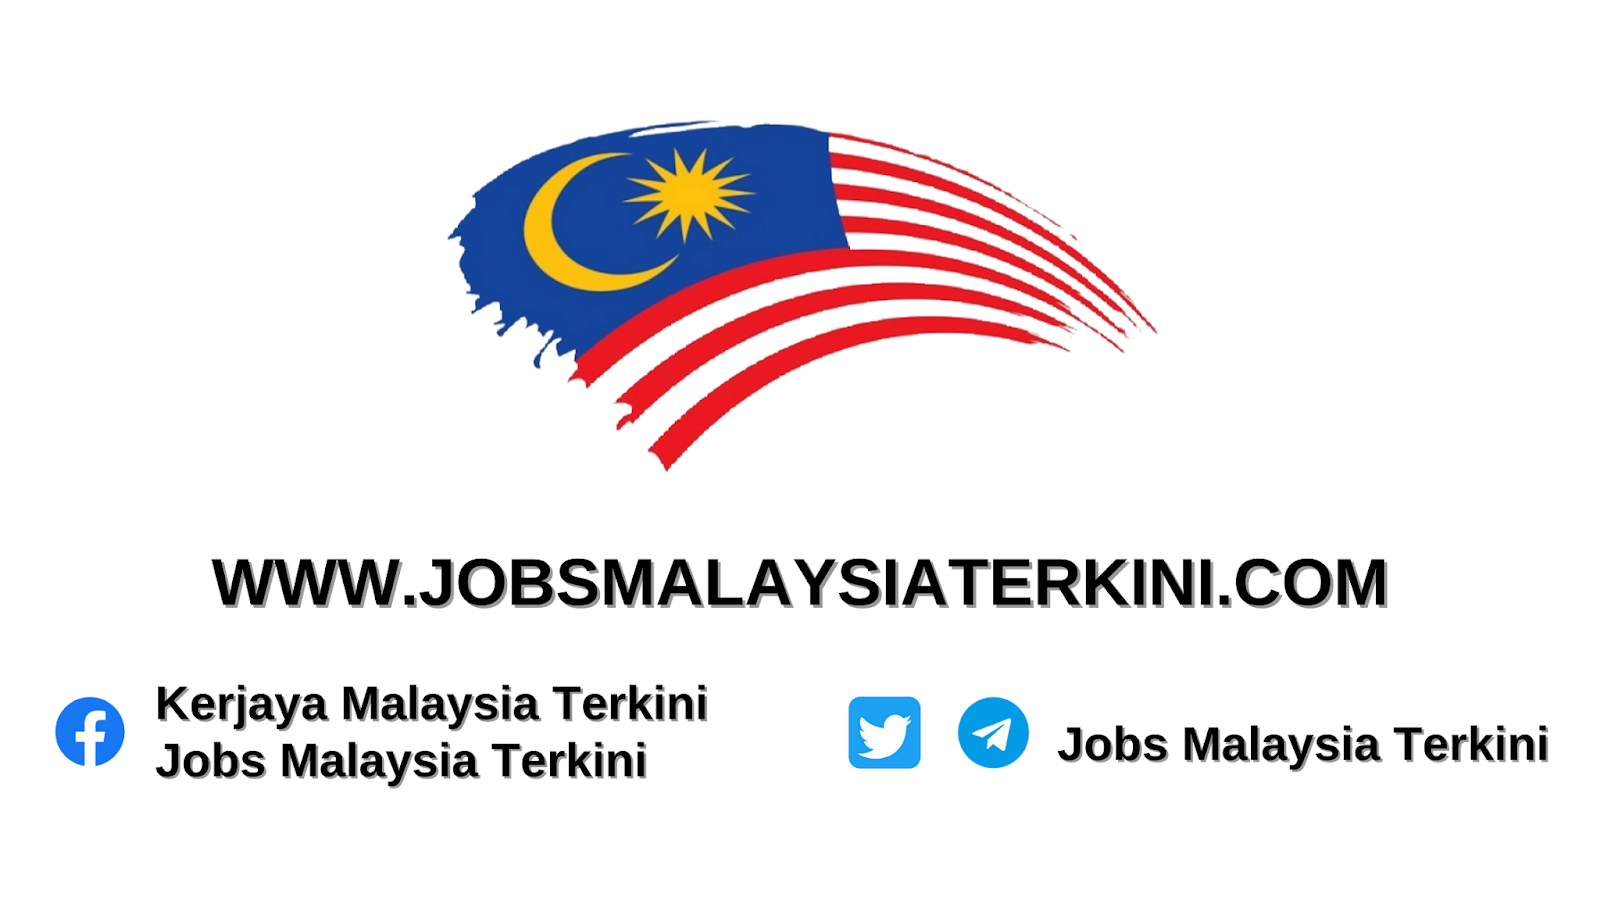 Jobs Malaysia Terkini